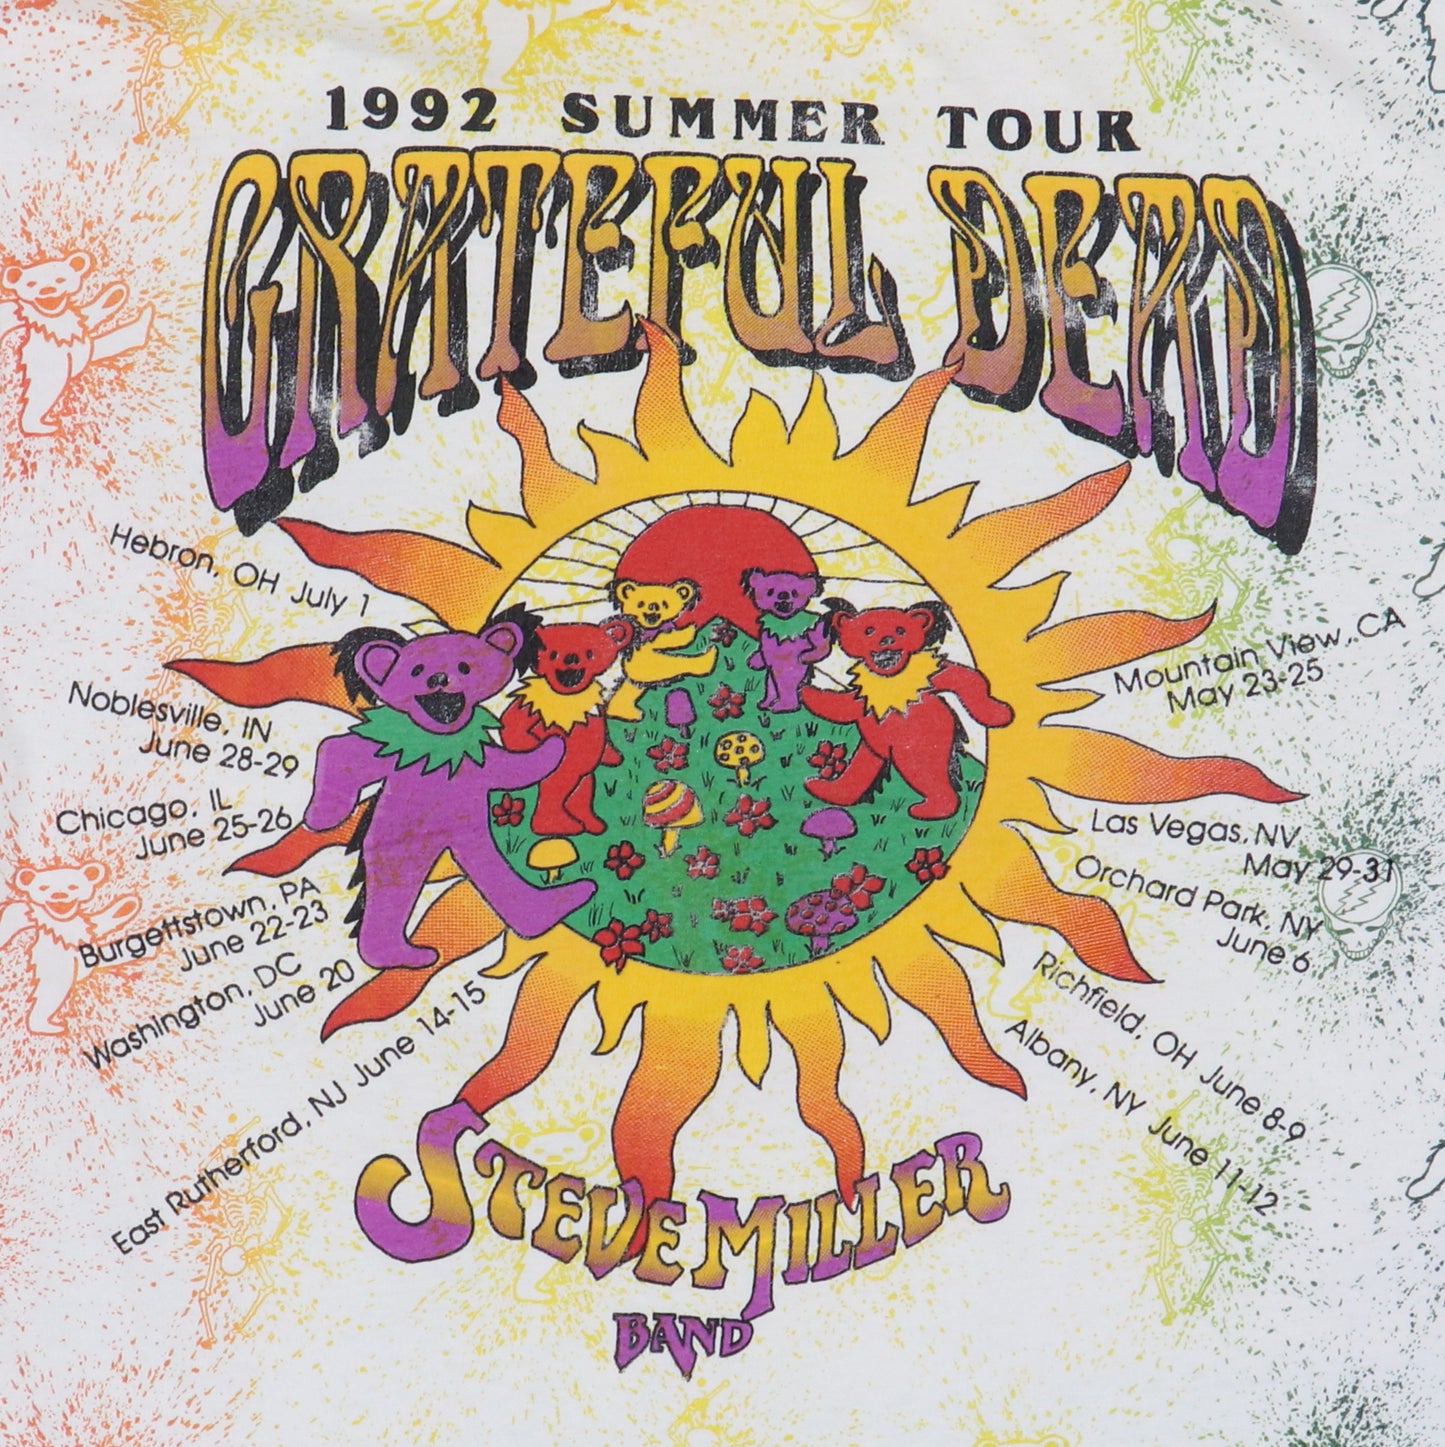 Vintage Grateful Dead Air Jerry 1992 Summer Tour